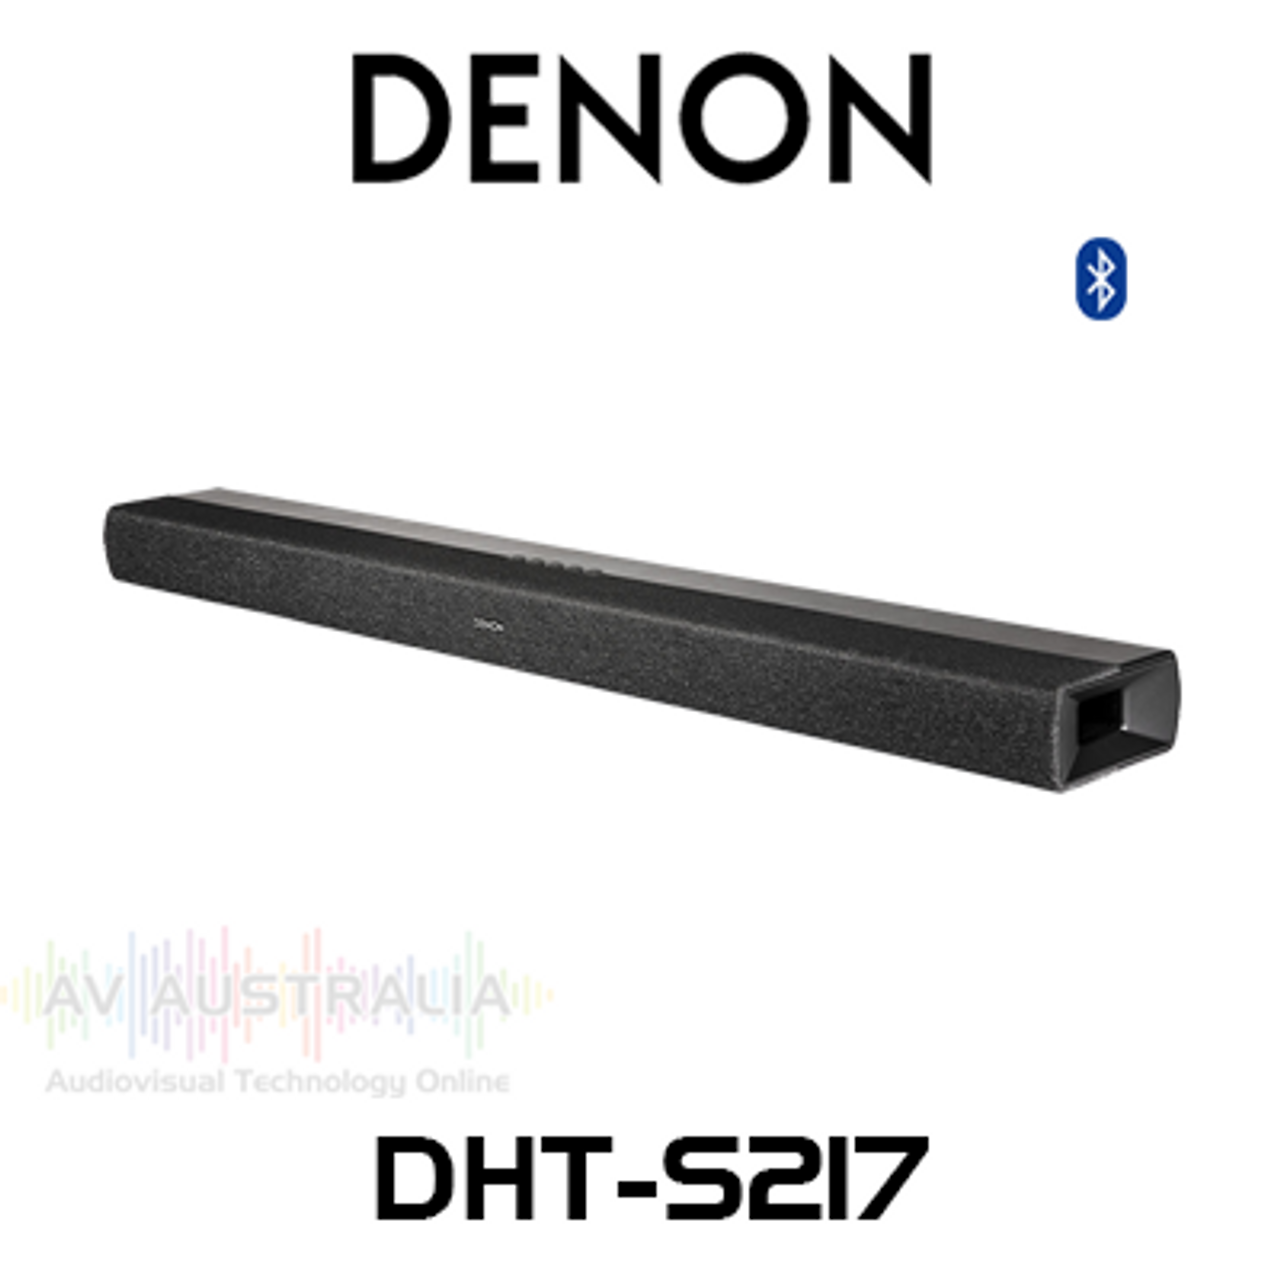 DENONサウンドバーDHT-S217 - スピーカー